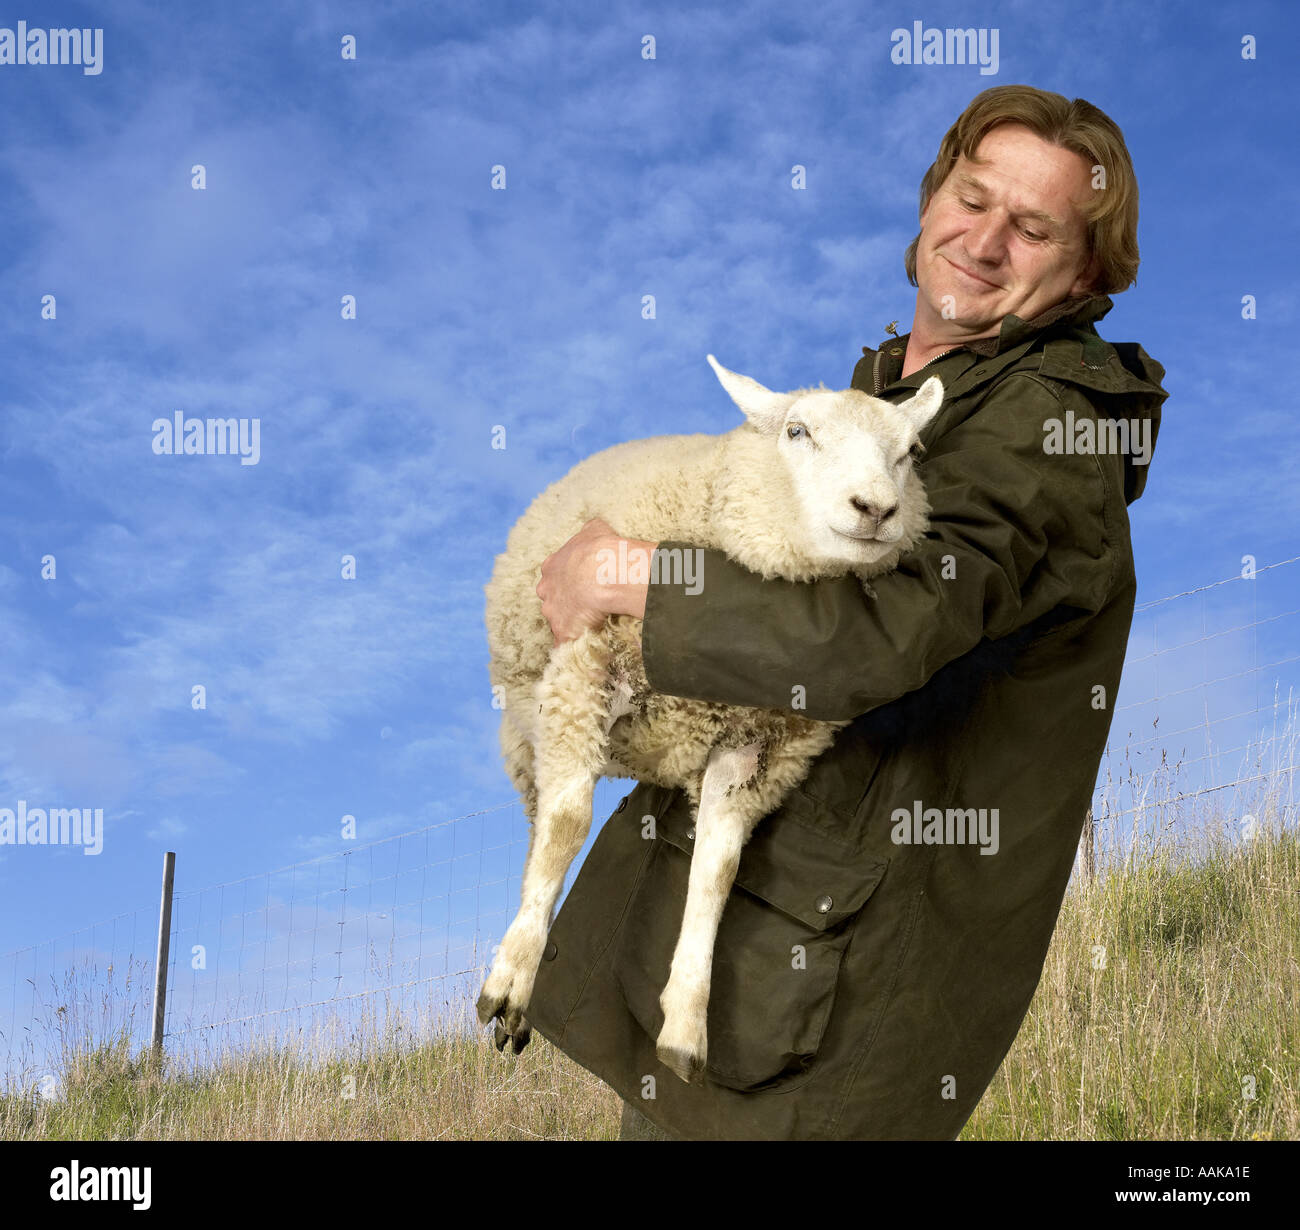 Shepherd with sheep Stock Photo